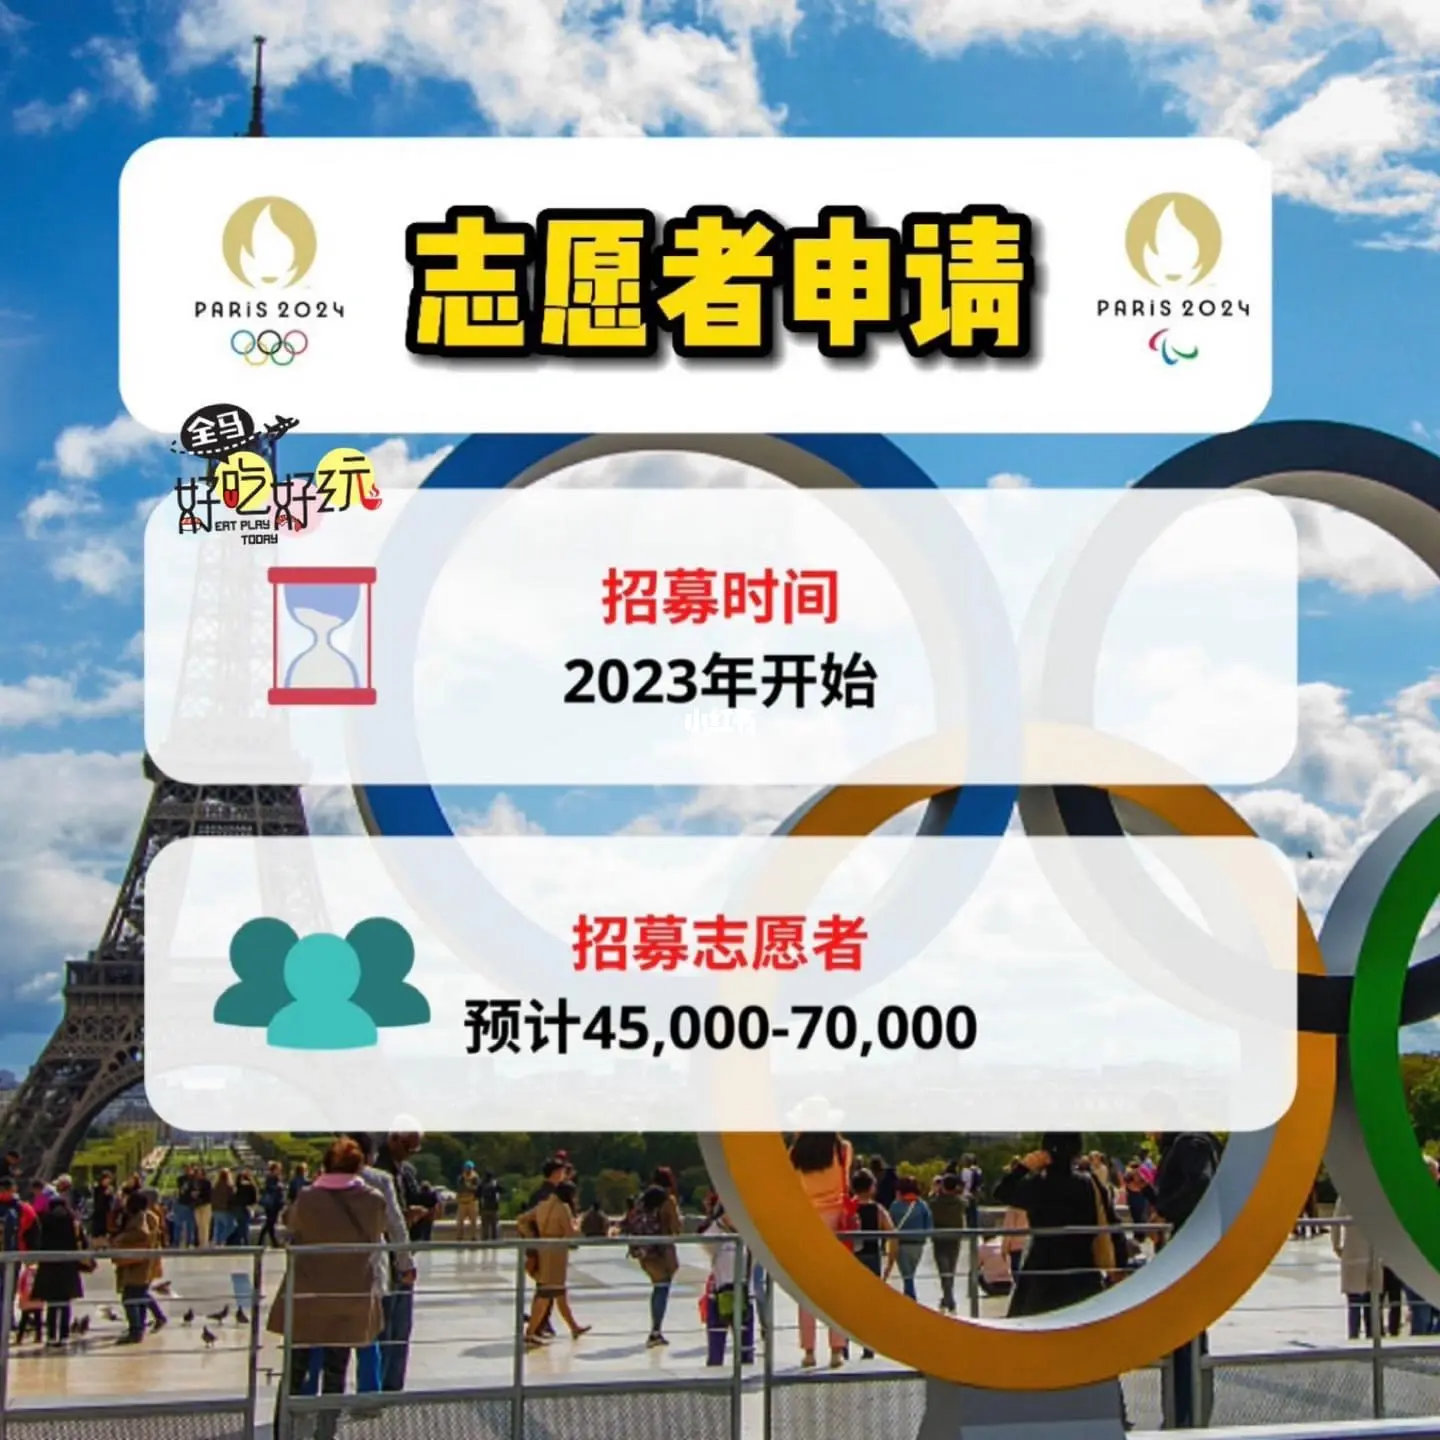 2022年日元会暴跌吗_2022年北京奥运会为多少届_2022年奥运会志愿者